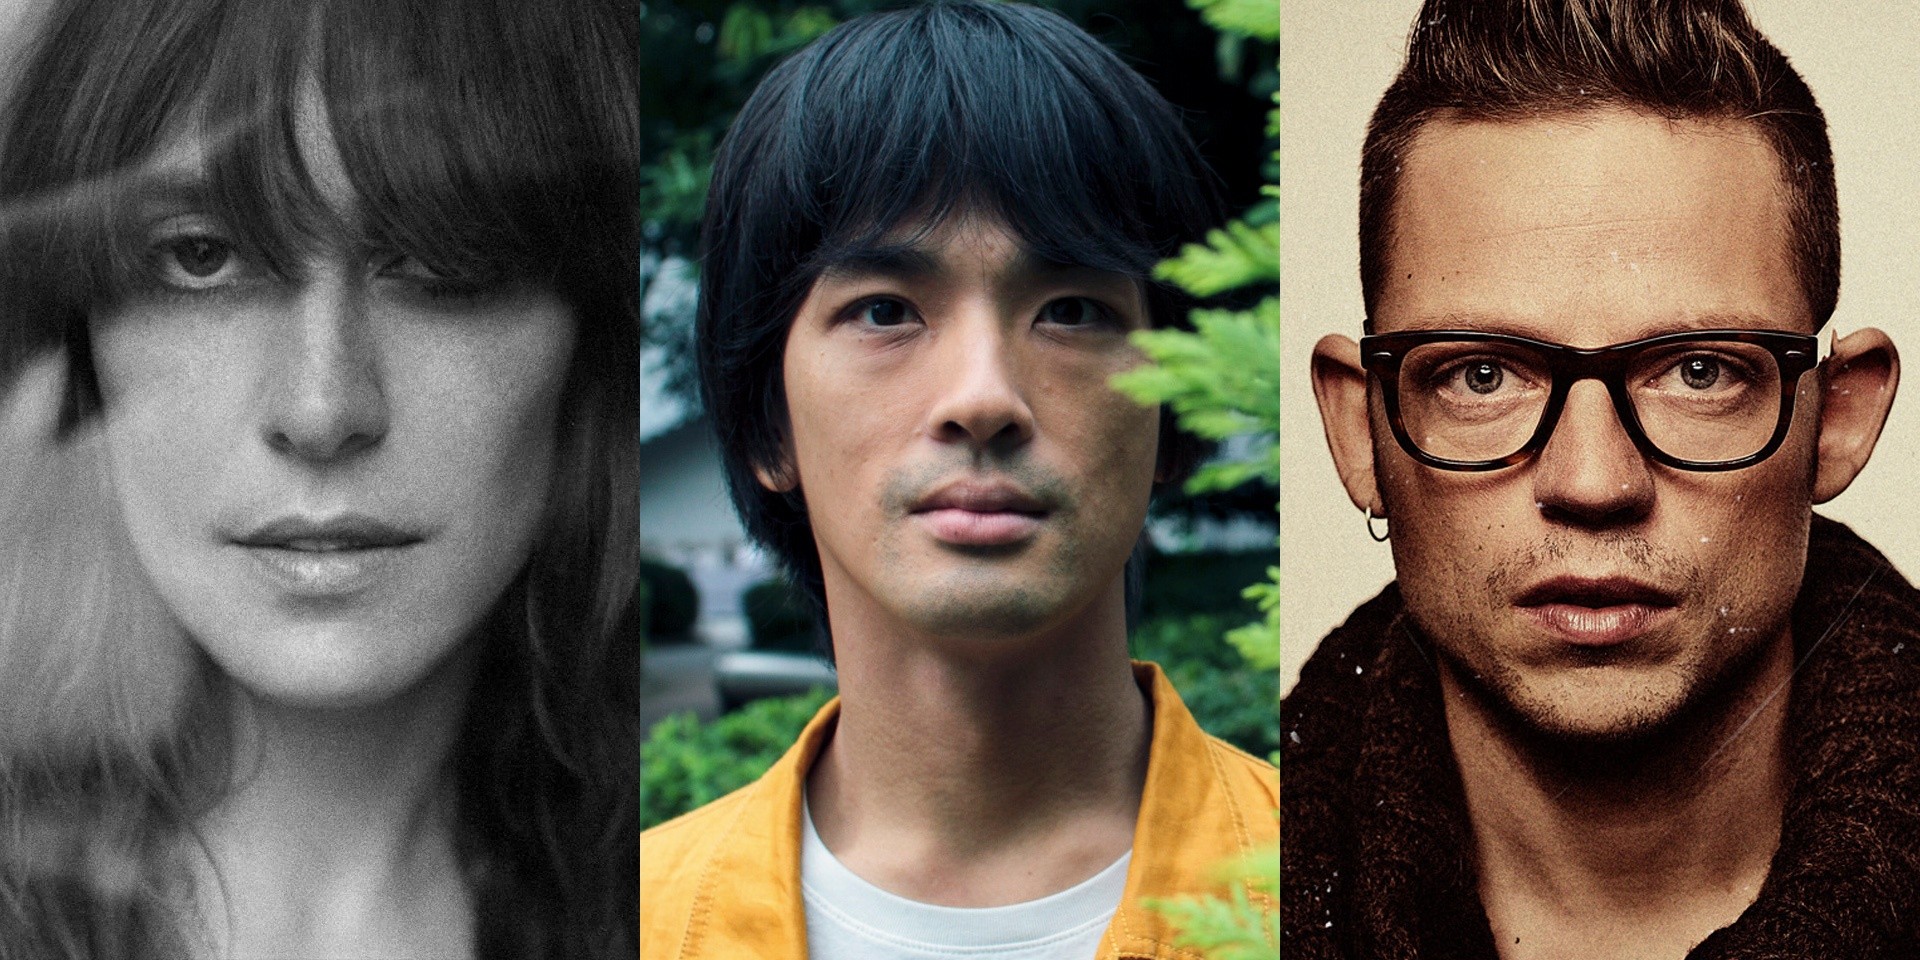 Mosaic Music Series returns with Feist, Shugo Tokumaru, Bernhoft and more